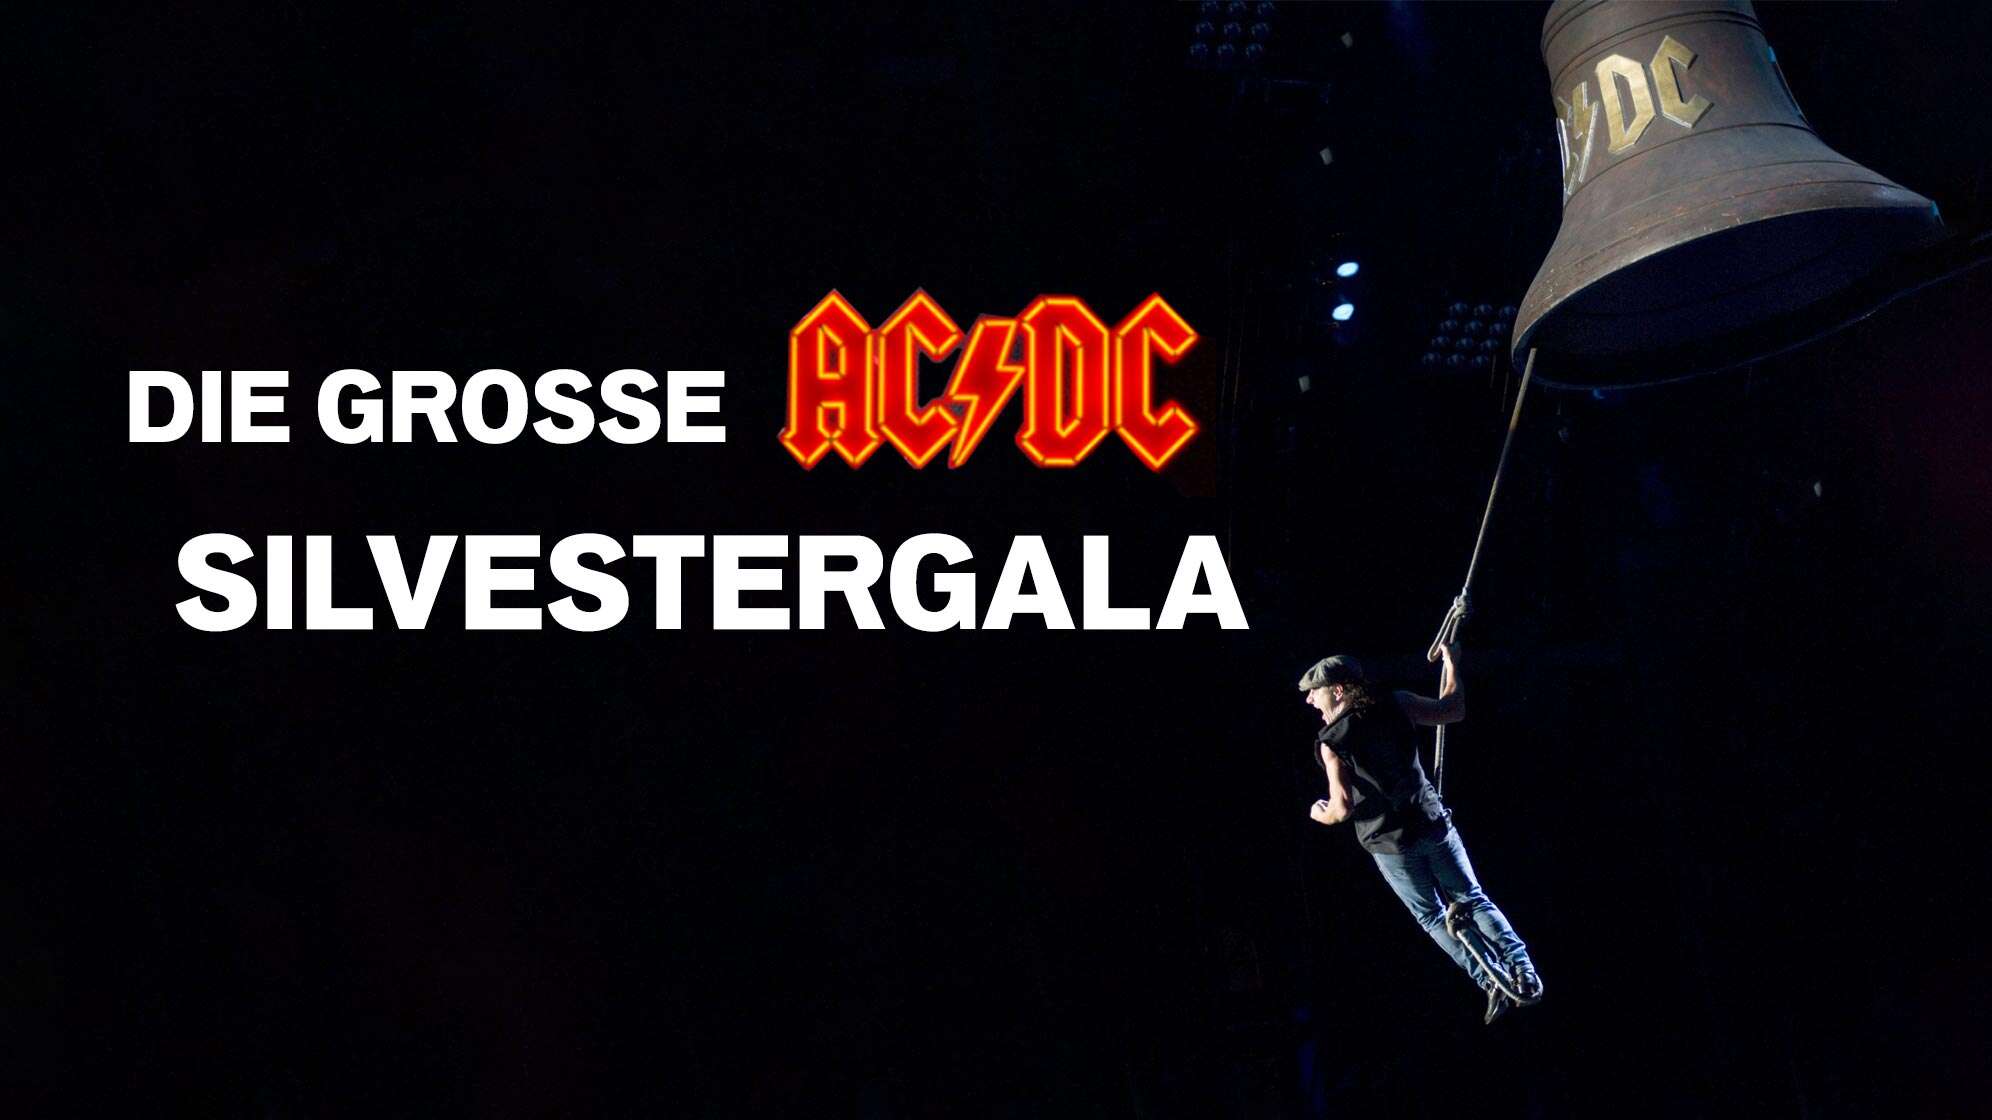 Brian Johnson schwingt hängend an einer AC/DC Hells Bells Glocke - Text dazu "Die grosse AC/DC Silvestergala"